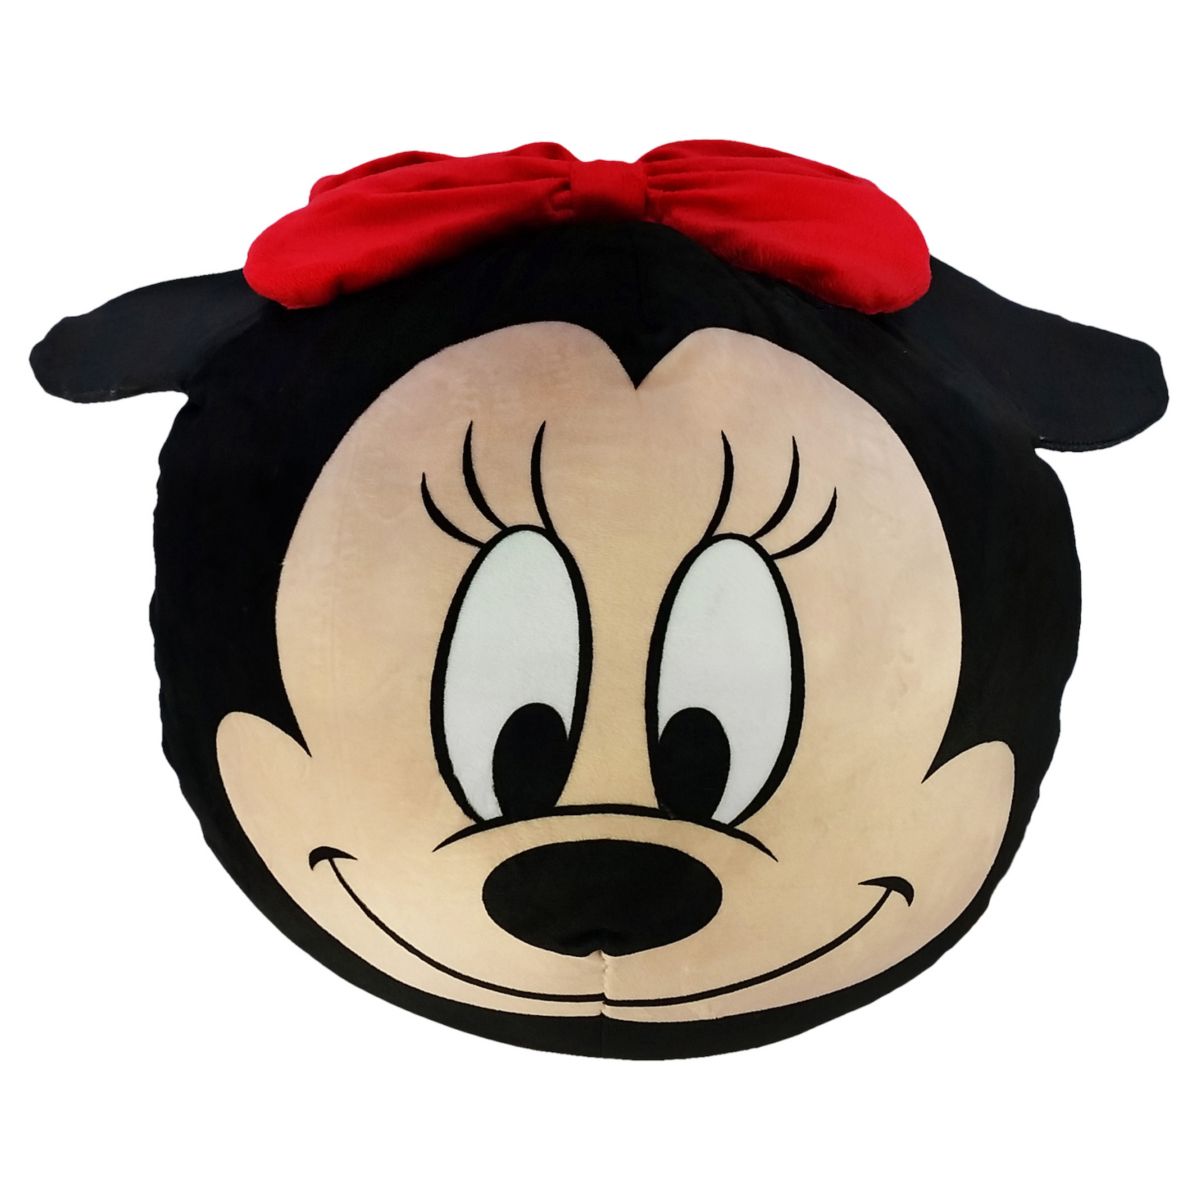 Подушка-облако Минни Маус от Disney Licensed Character